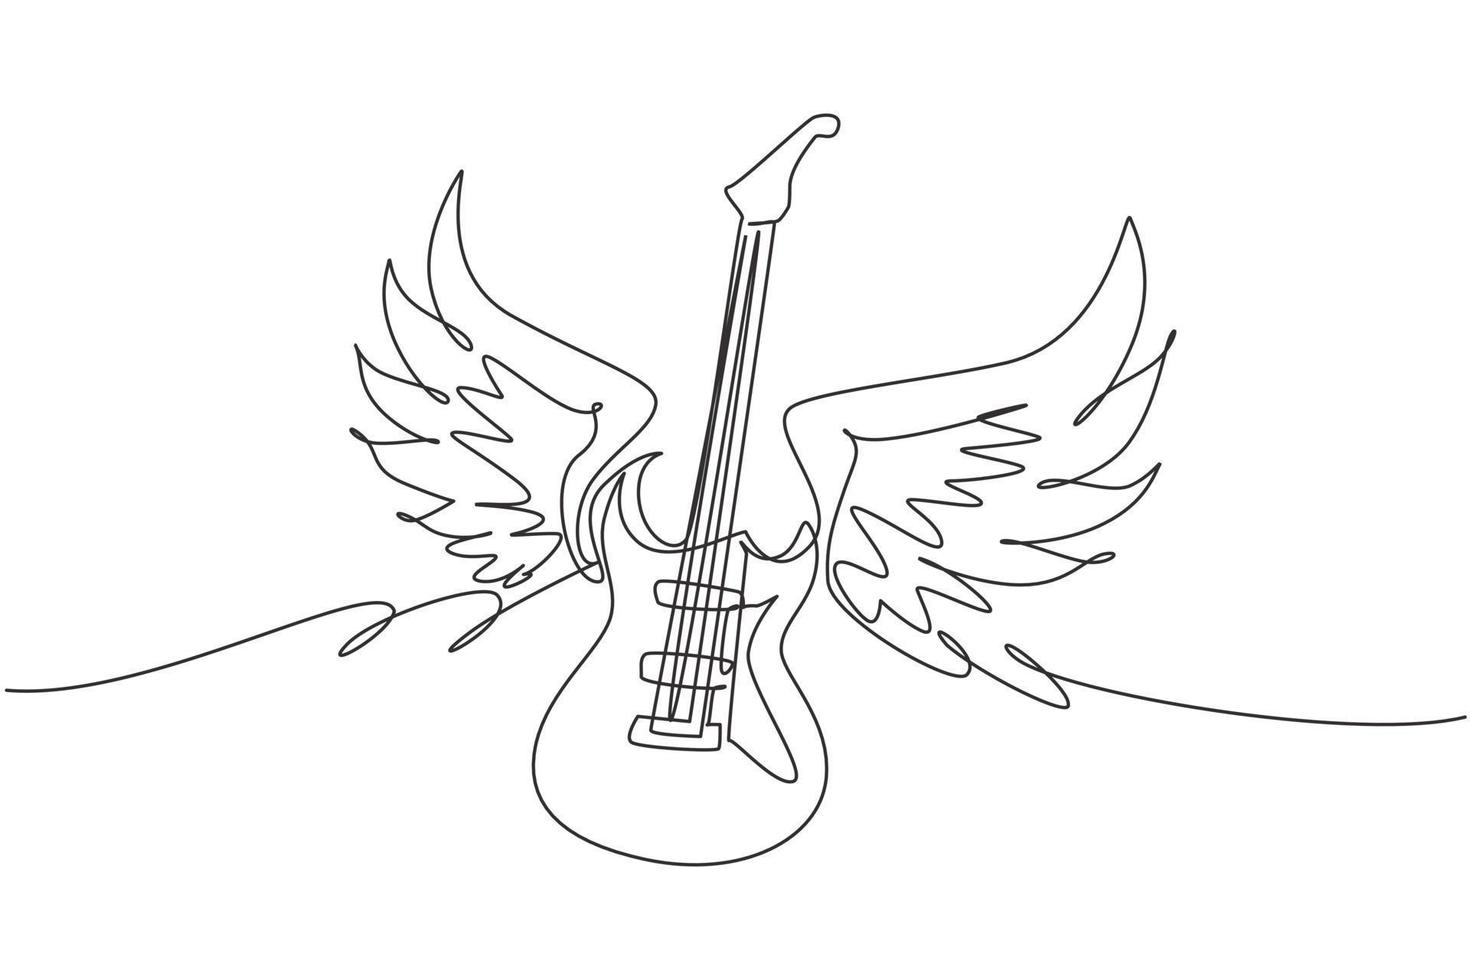 chitarra elettrica con disegno a una linea singola con le ali. etichetta vintage, illustrazione, logotipo. segno rock, gesto per il logo del festival musicale. illustrazione vettoriale grafica moderna con disegno a linea continua